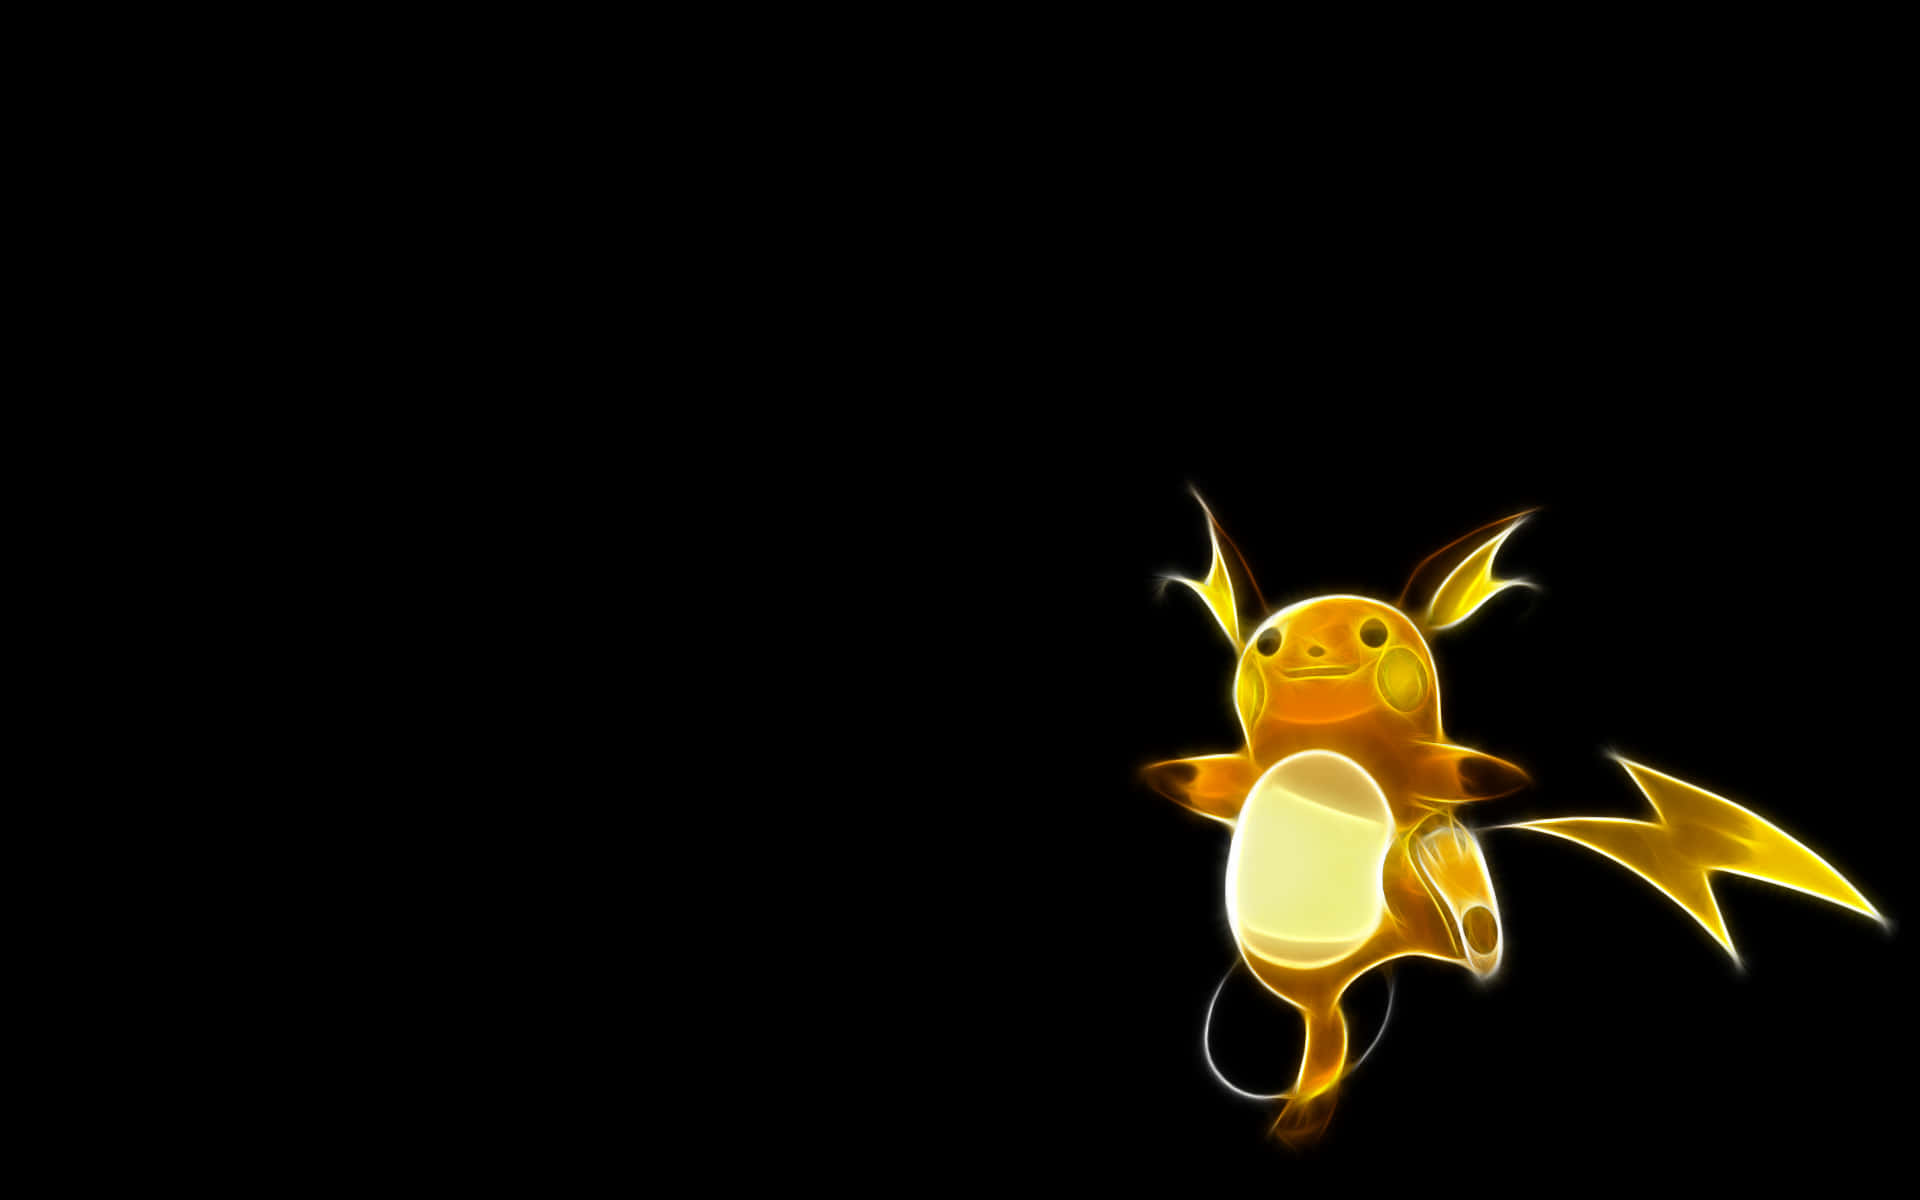 Glowing Raichu Electric Pokemon Background